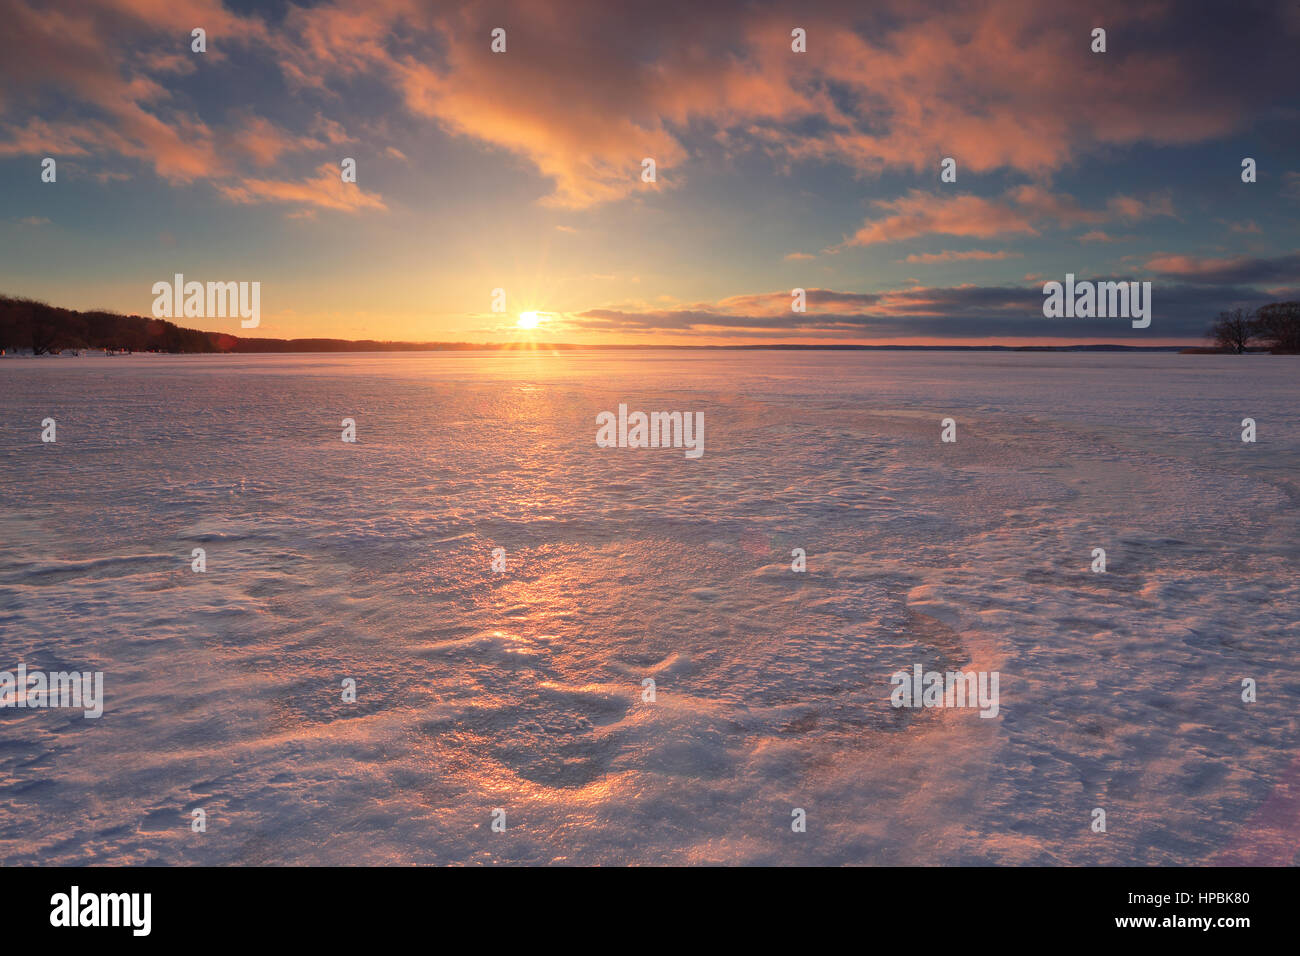 Allume la lumière du soleil Evning ice patterns.image de paysage. Scène d'hiver lumineux. Banque D'Images